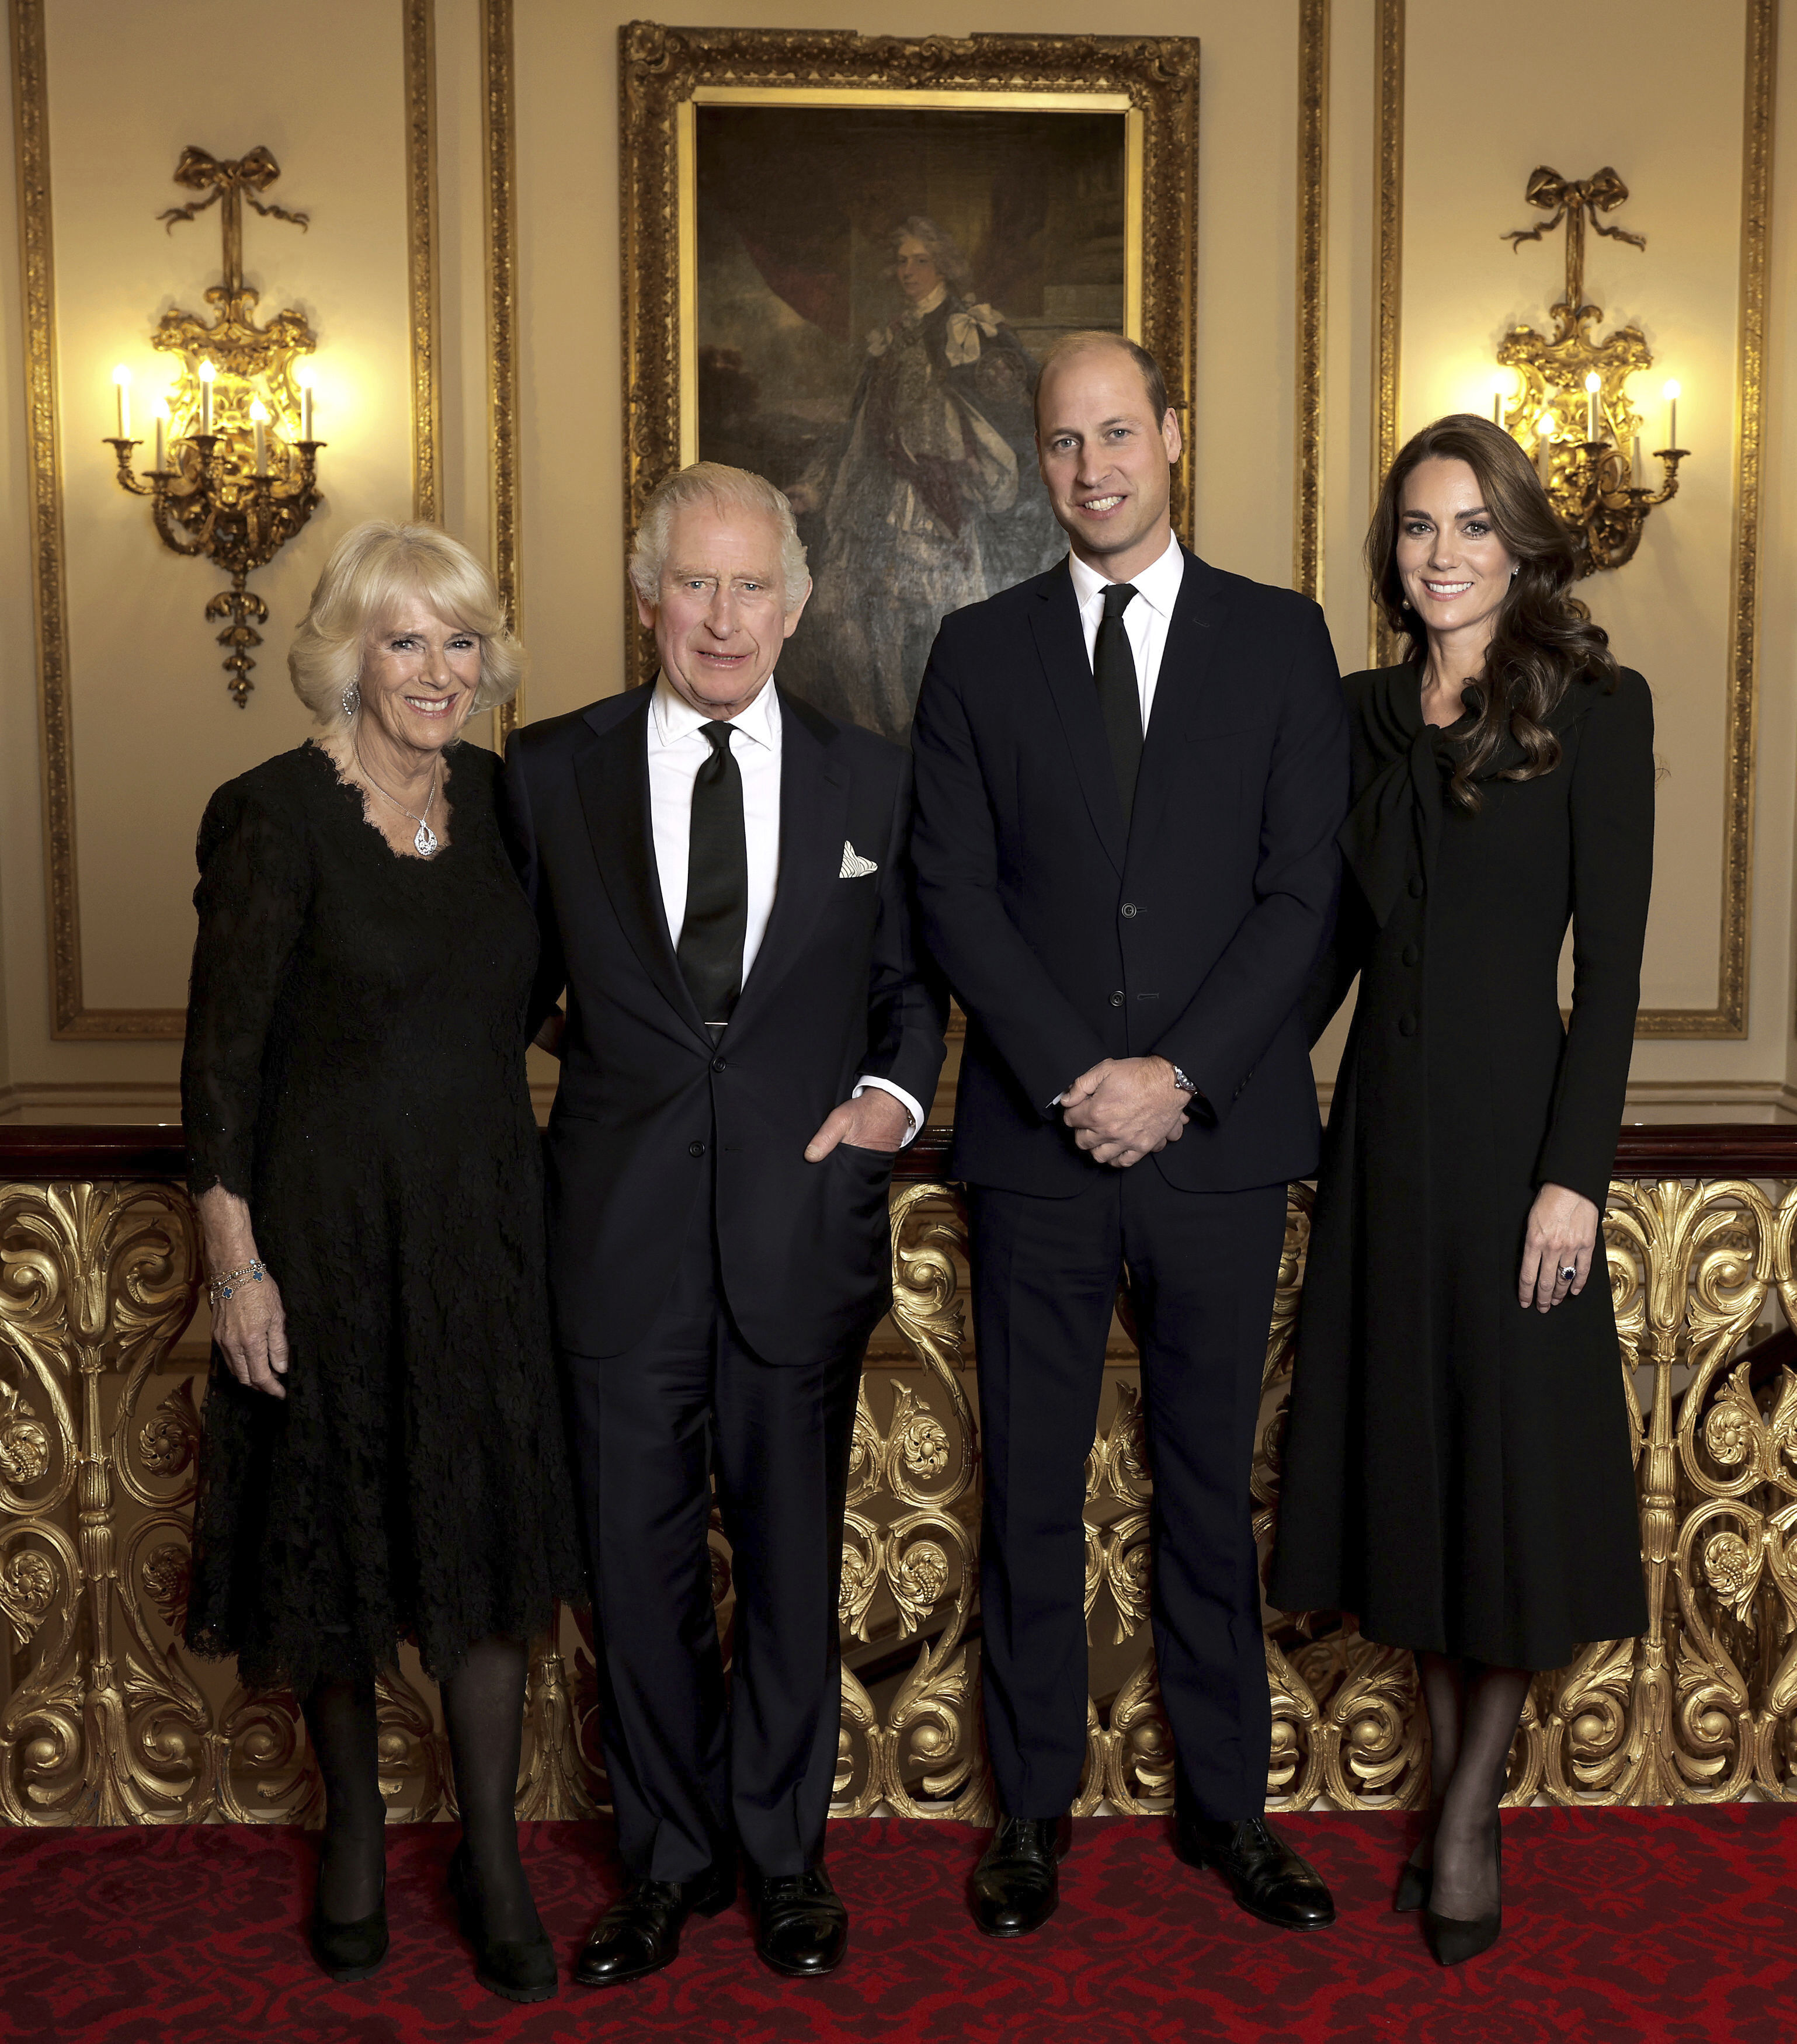 Дворец обнародовал новый портрет королевской семьи Великобритании